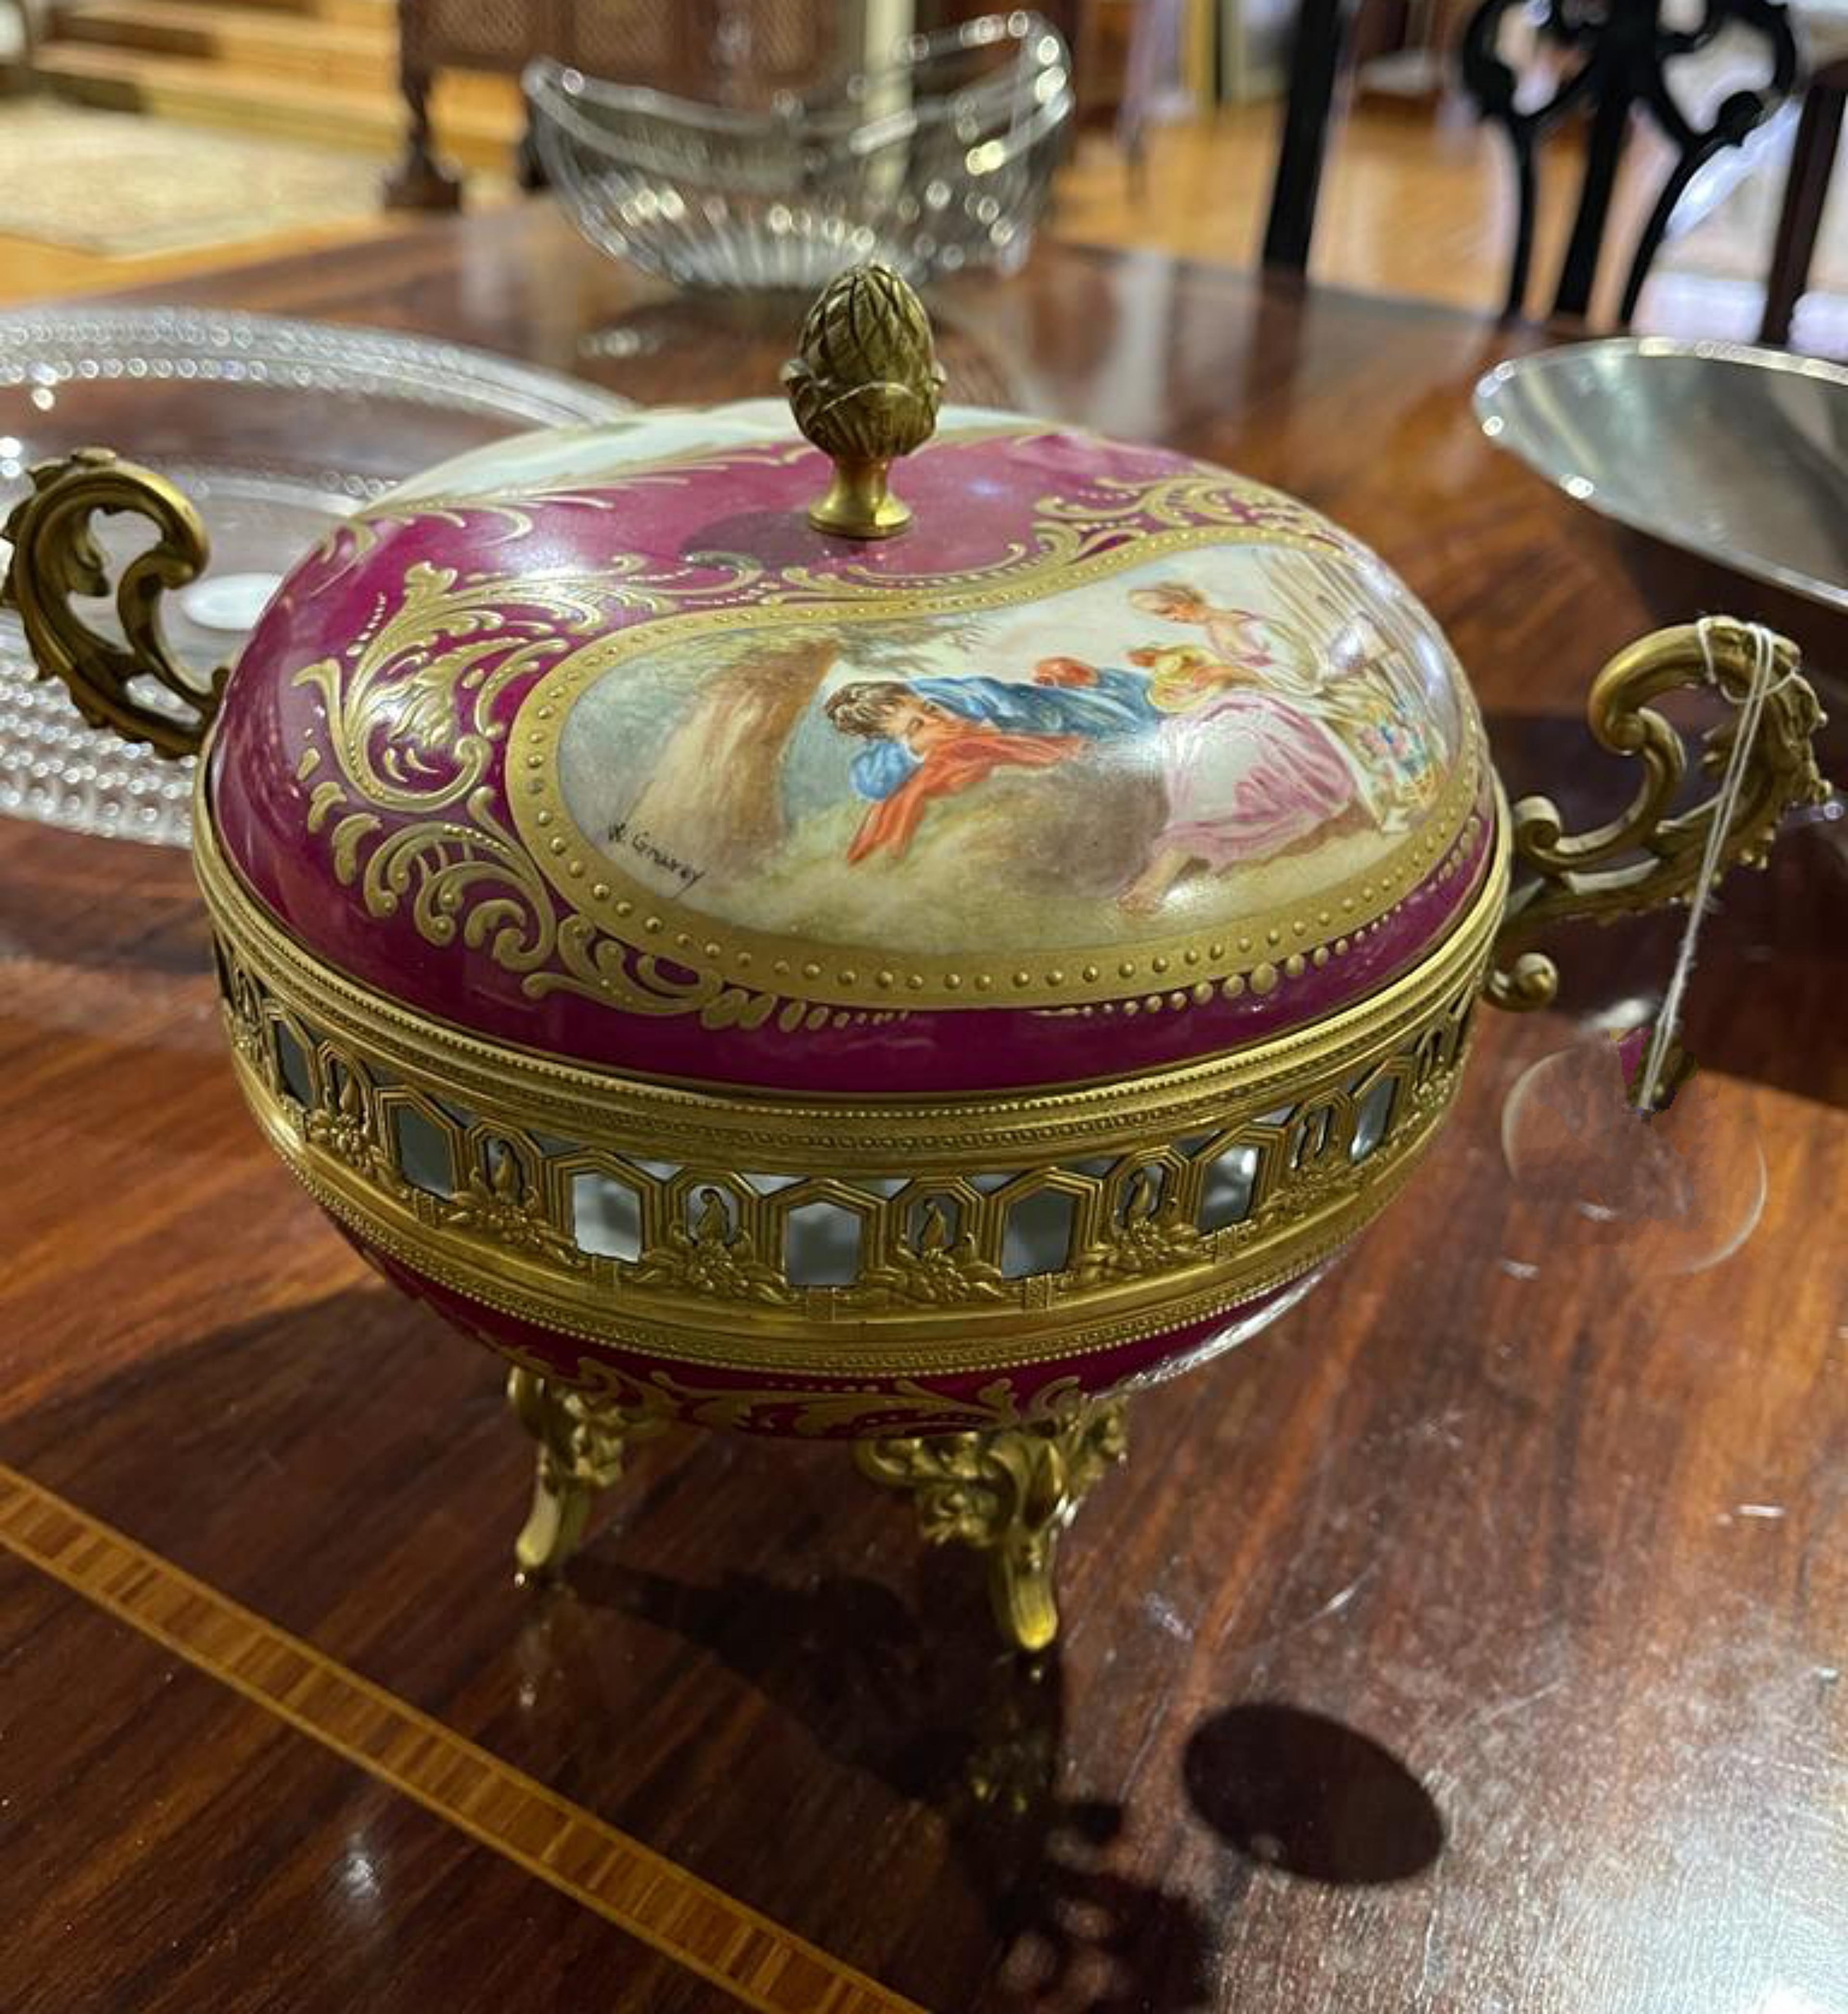 BEAU PARFUM Sèvres 18ème siècle

En porcelaine de Sèvres, avec une monture en bronze doré, décor polychrome et doré d'une scène de paysage galant et de motifs floraux.
Signé.
Dim. : 21 x 25 cm.
bonnes conditions